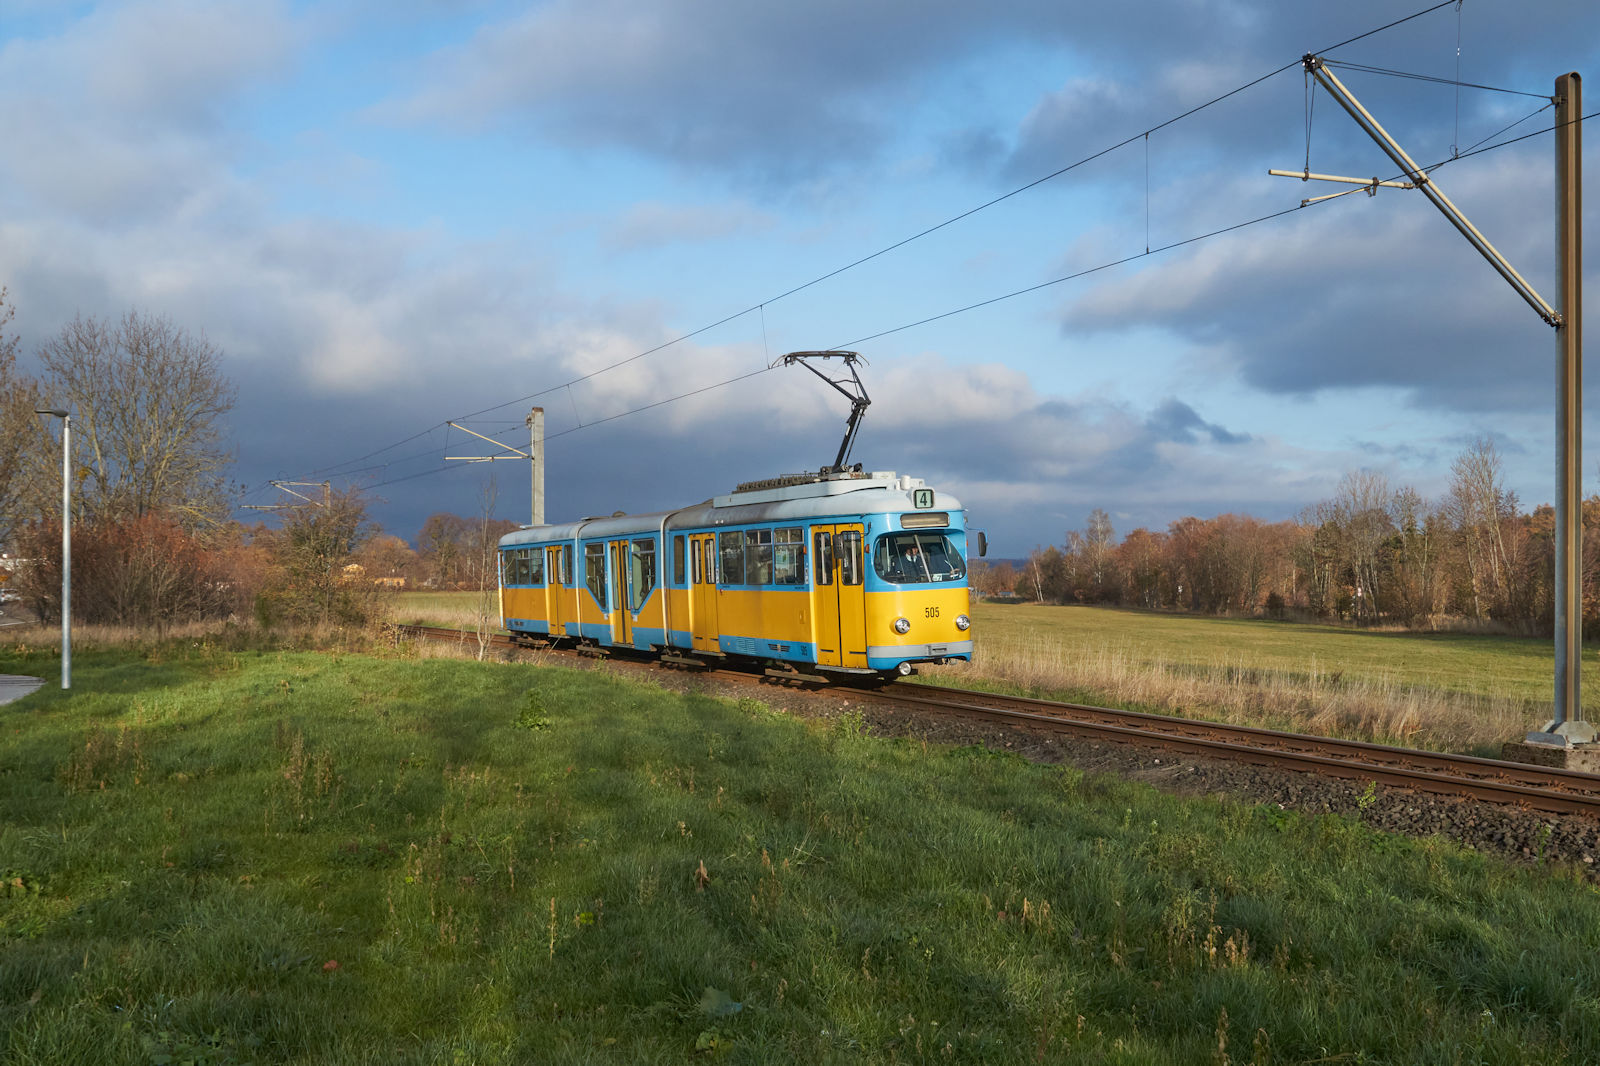 Am Nachmittag des 26.11.2022 war Tw 505 der Thüringer Wald- und Straßenbahn Gotha auf dem Weg von Gotha nach Bad Tabarz. Der Zug befand sich kurz vor der Haltestelle Schnepfenthal.